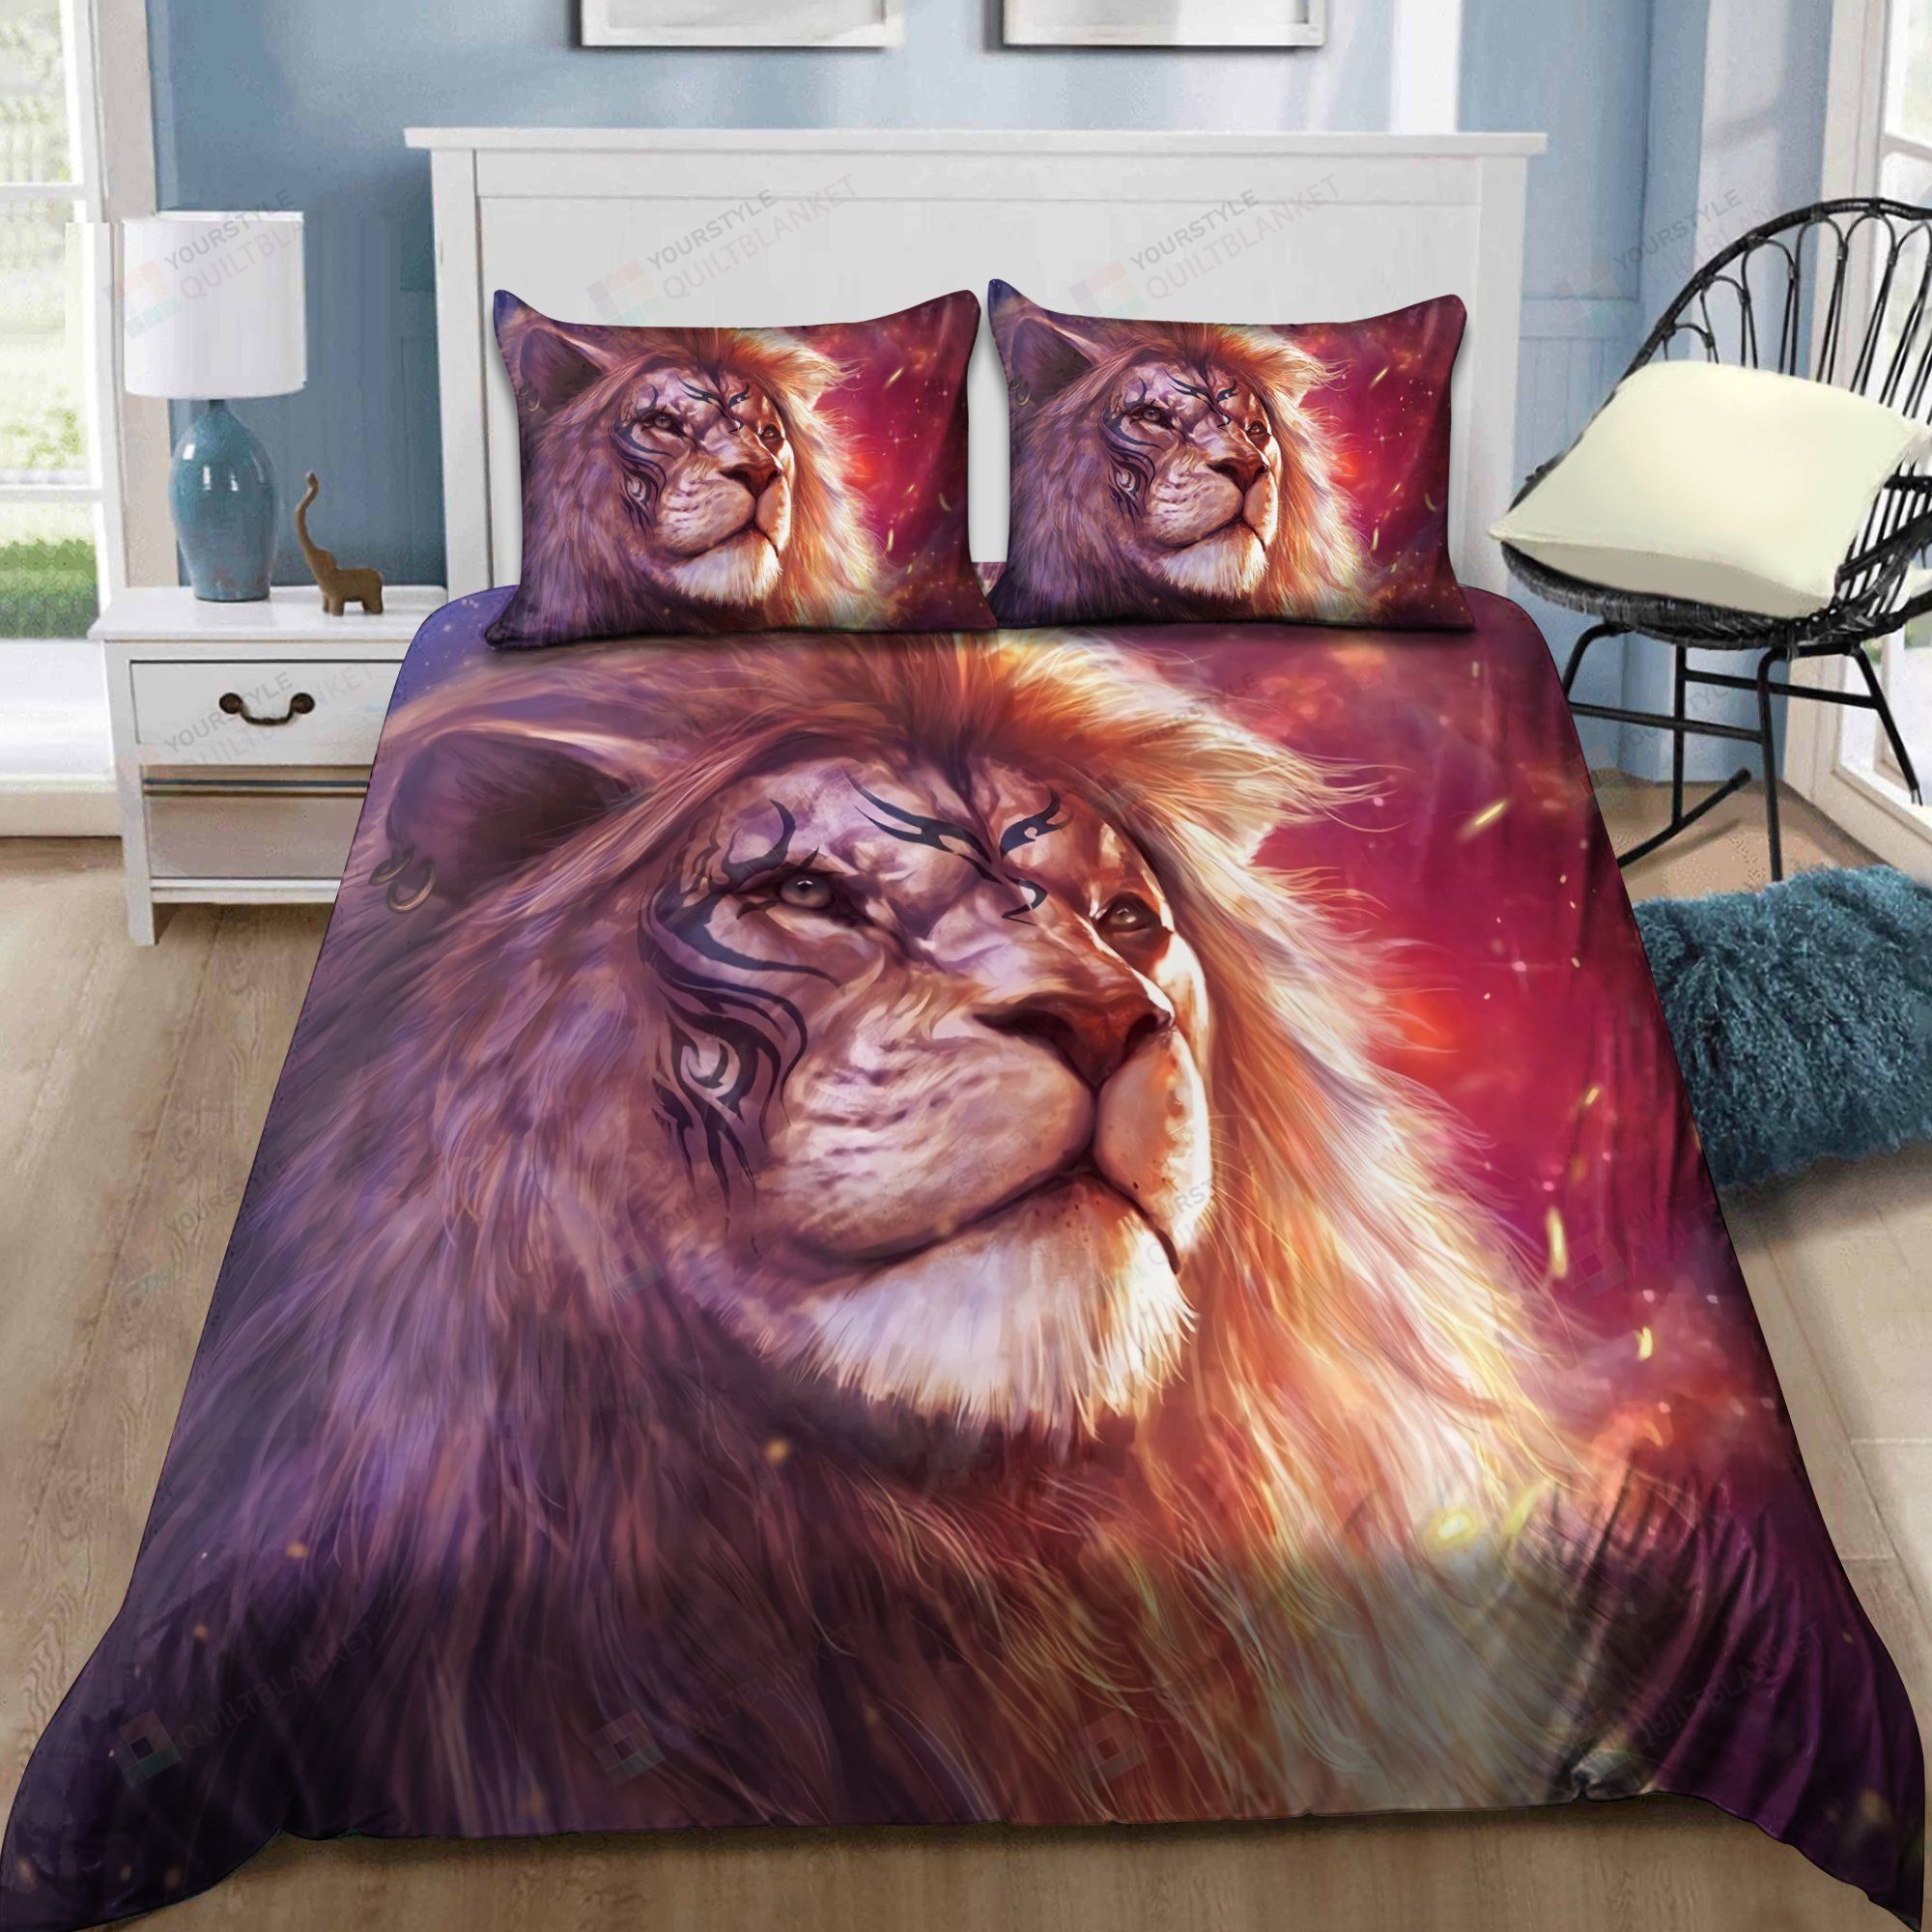 Lion Bedding Set Bed Sheets Spread Comforter Duvet Cover Bedding Sets